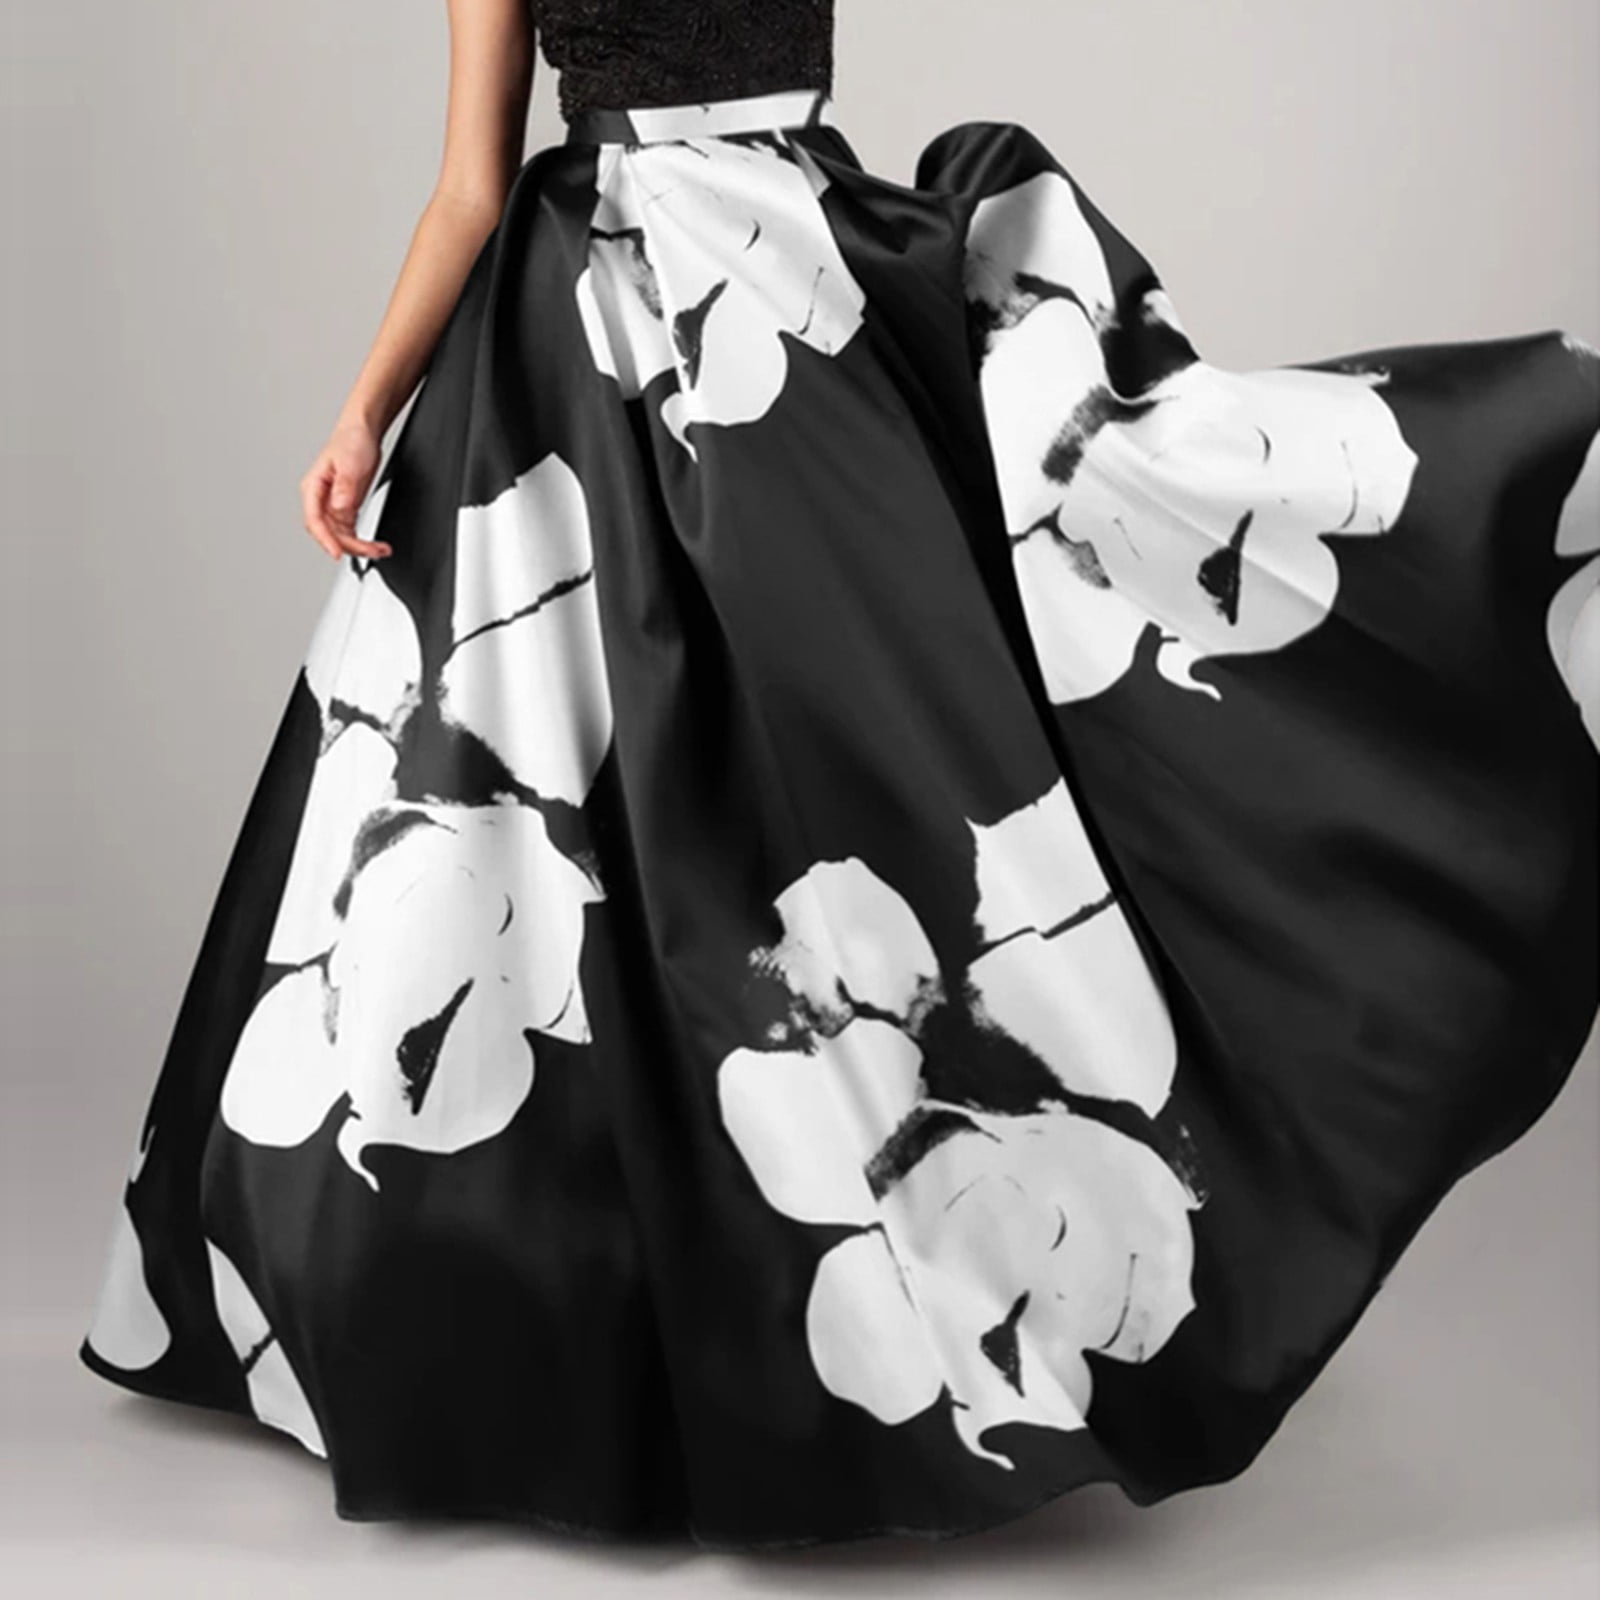 Mortilo Women Bohemian Floral Print Skirt High Waist Party Beach Pocket Long  Maxi Skirt 